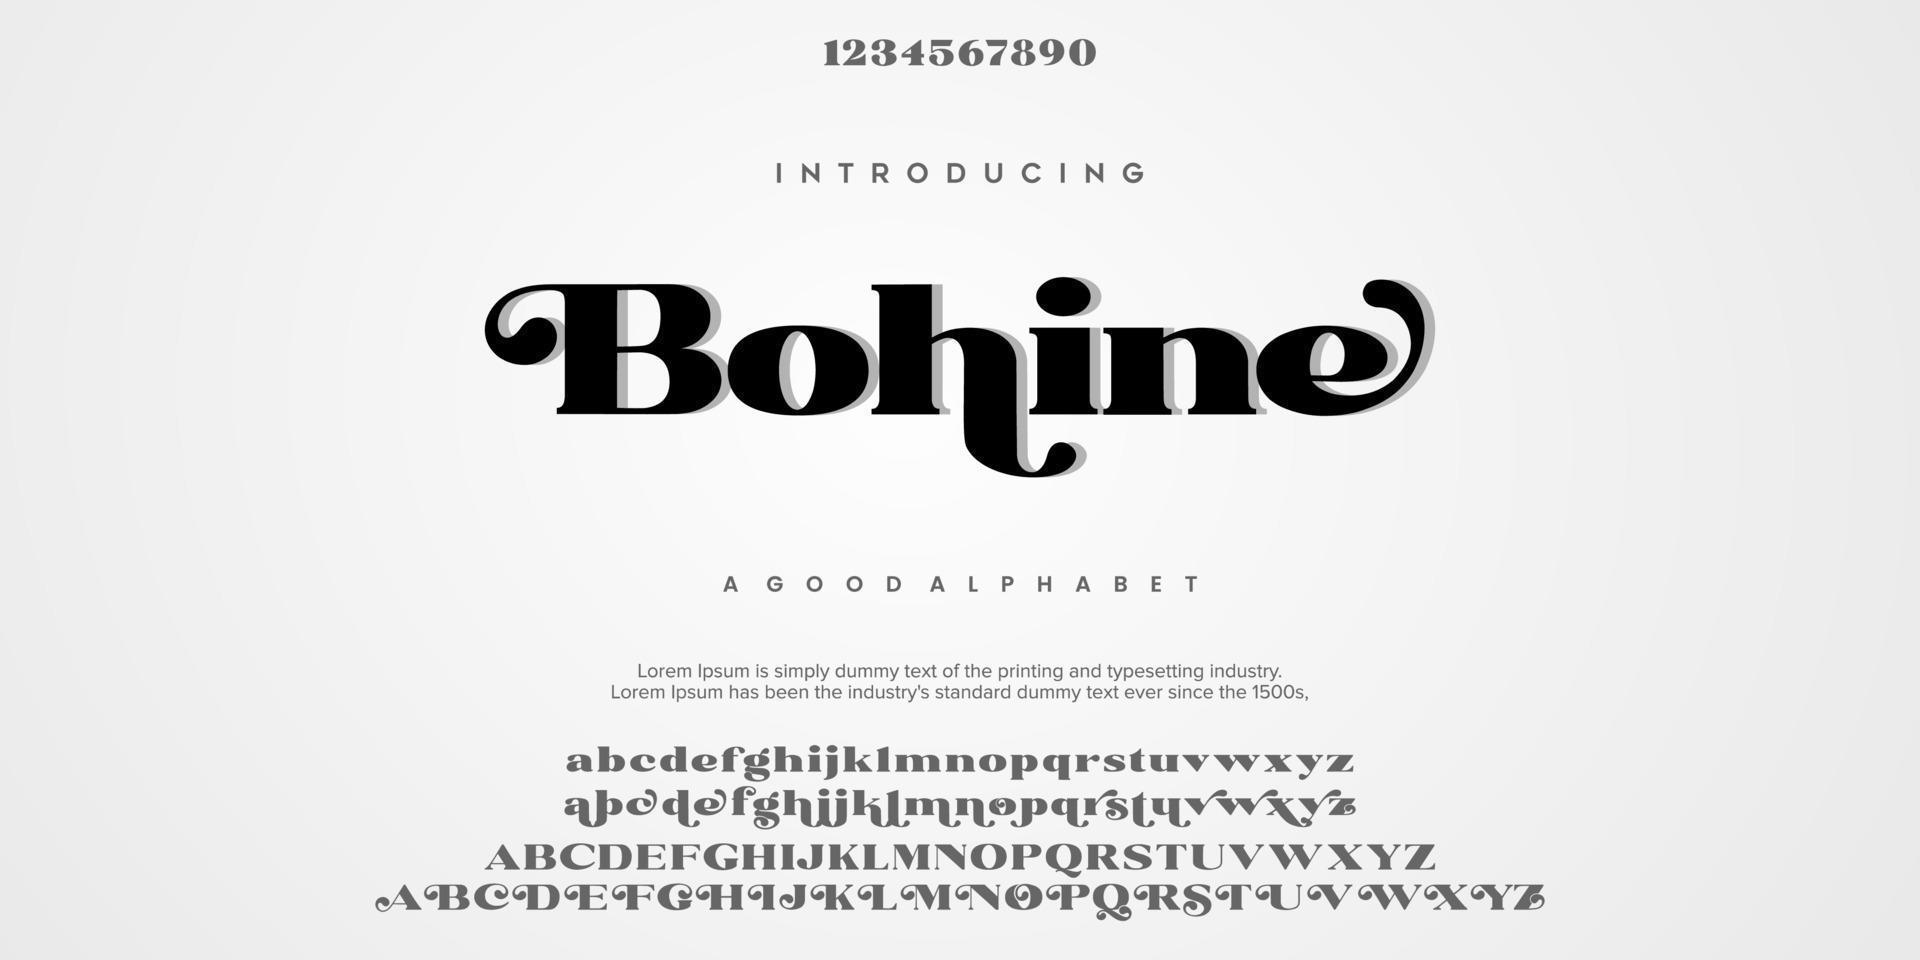 bohine abstracte mode lettertype alfabet. typografie lettertype hoofdletters kleine letters en nummer. vector illustratie